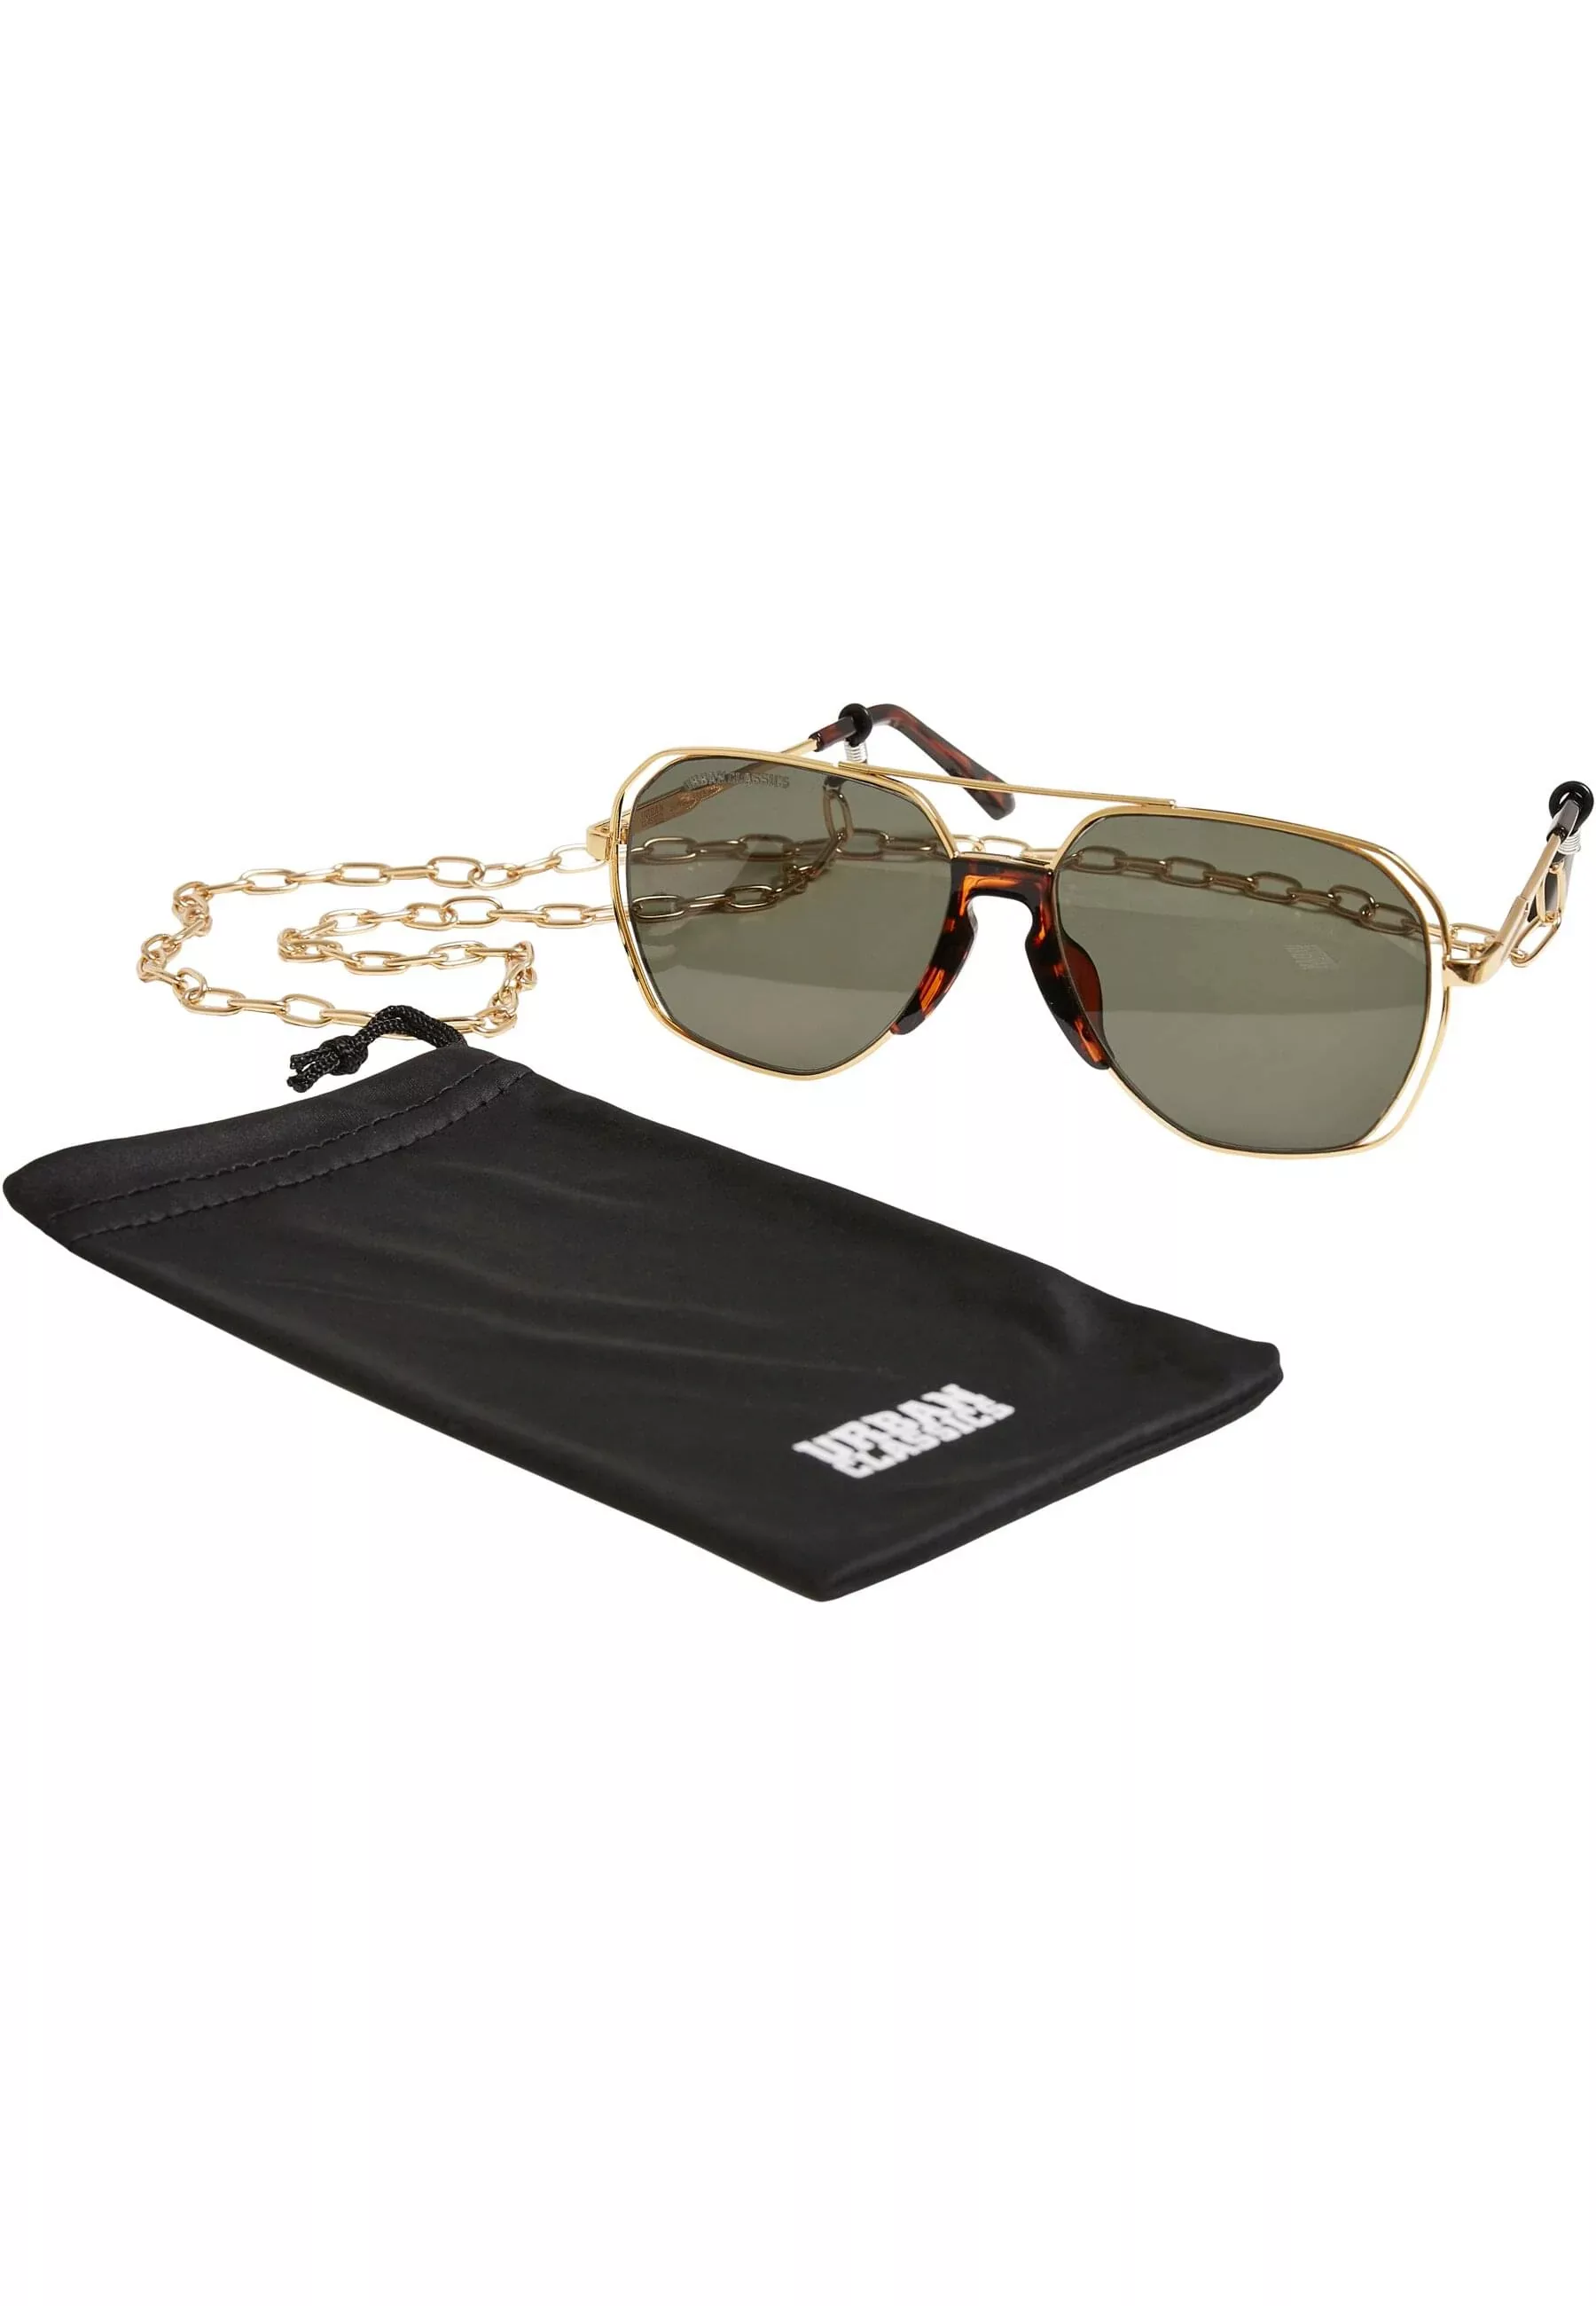 URBAN CLASSICS Sonnenbrille "Unisex Sunglasses Karphatos with Chain" günstig online kaufen